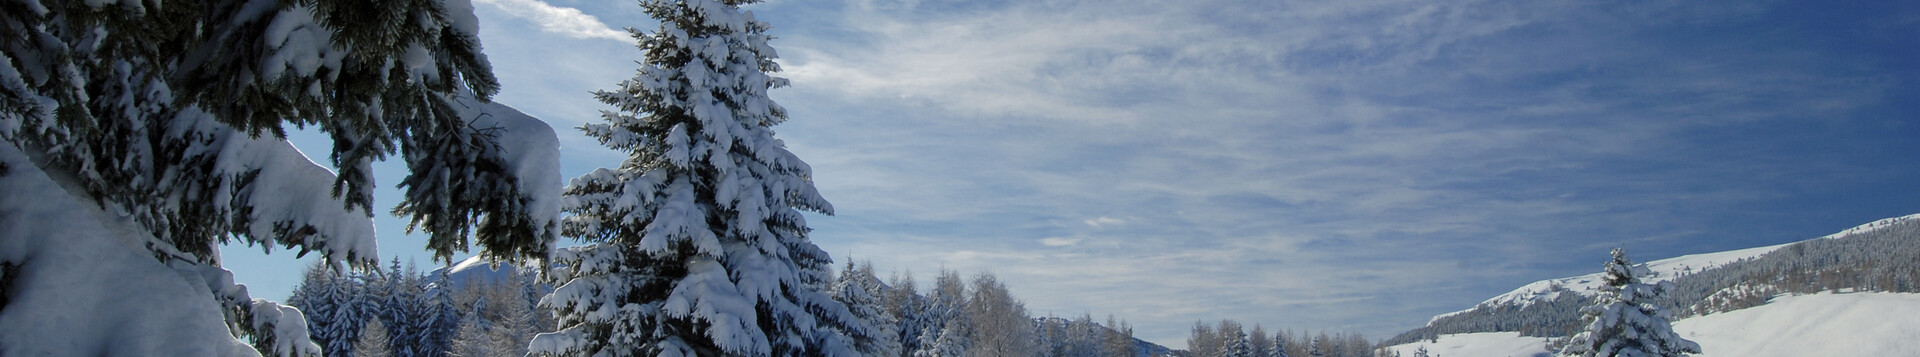 Snadno dostupné lyžování poblíž Tre | © 22453-monte-bondone-inverno-giovanni-cavulli